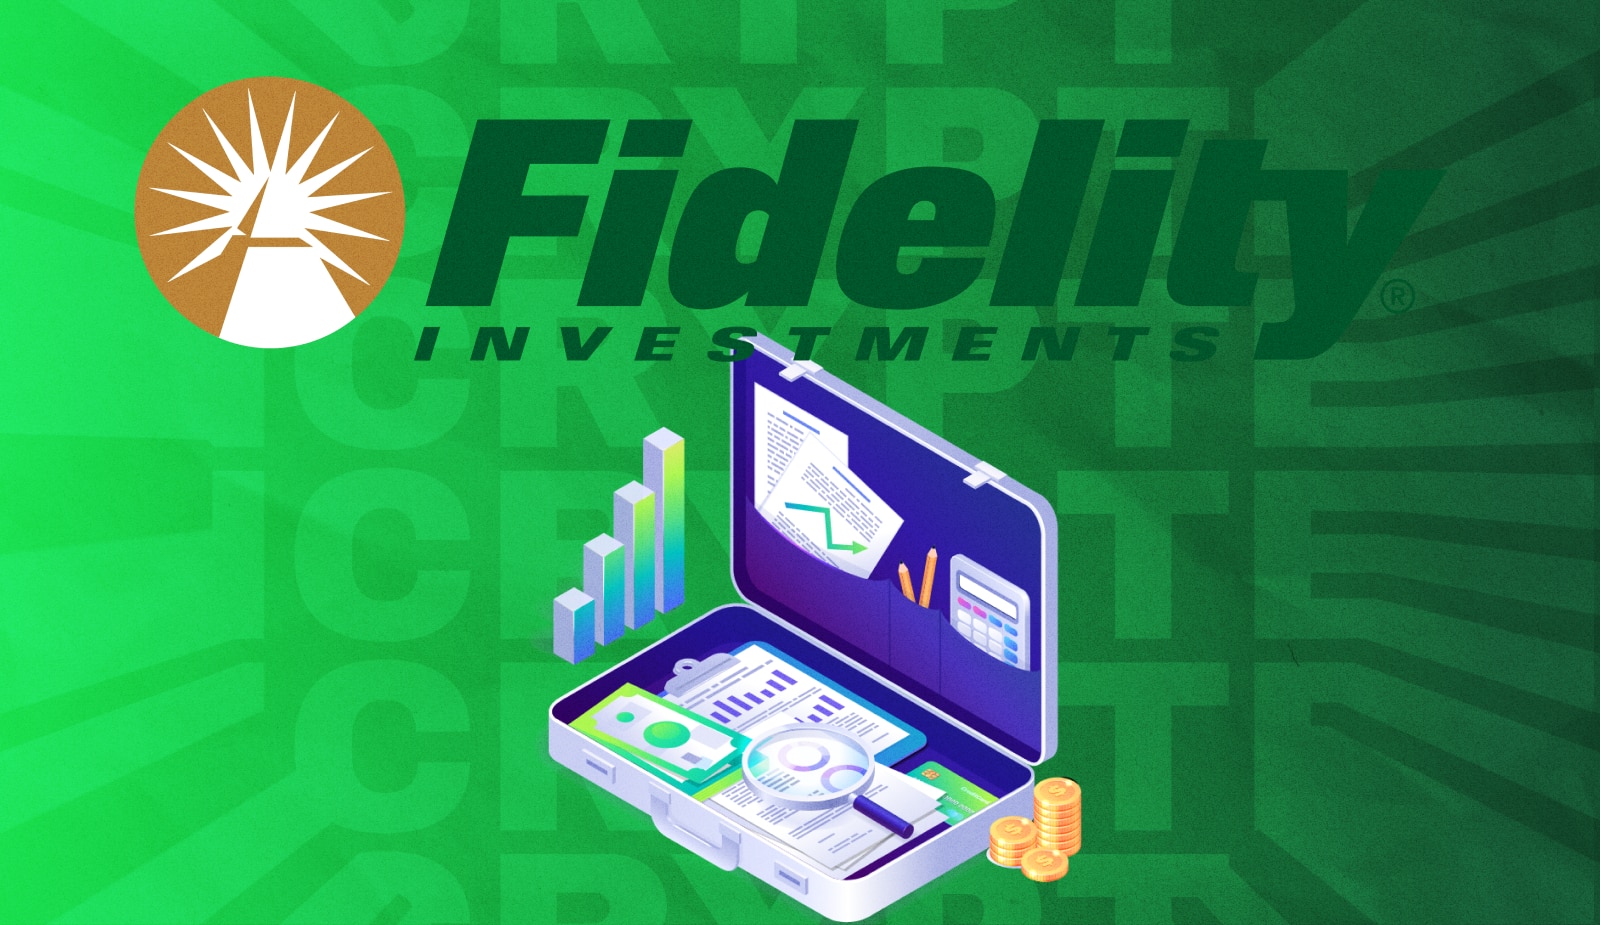 Fidelity представили крипто-платформу для розничных инвесторов. Заглавный коллаж новости.